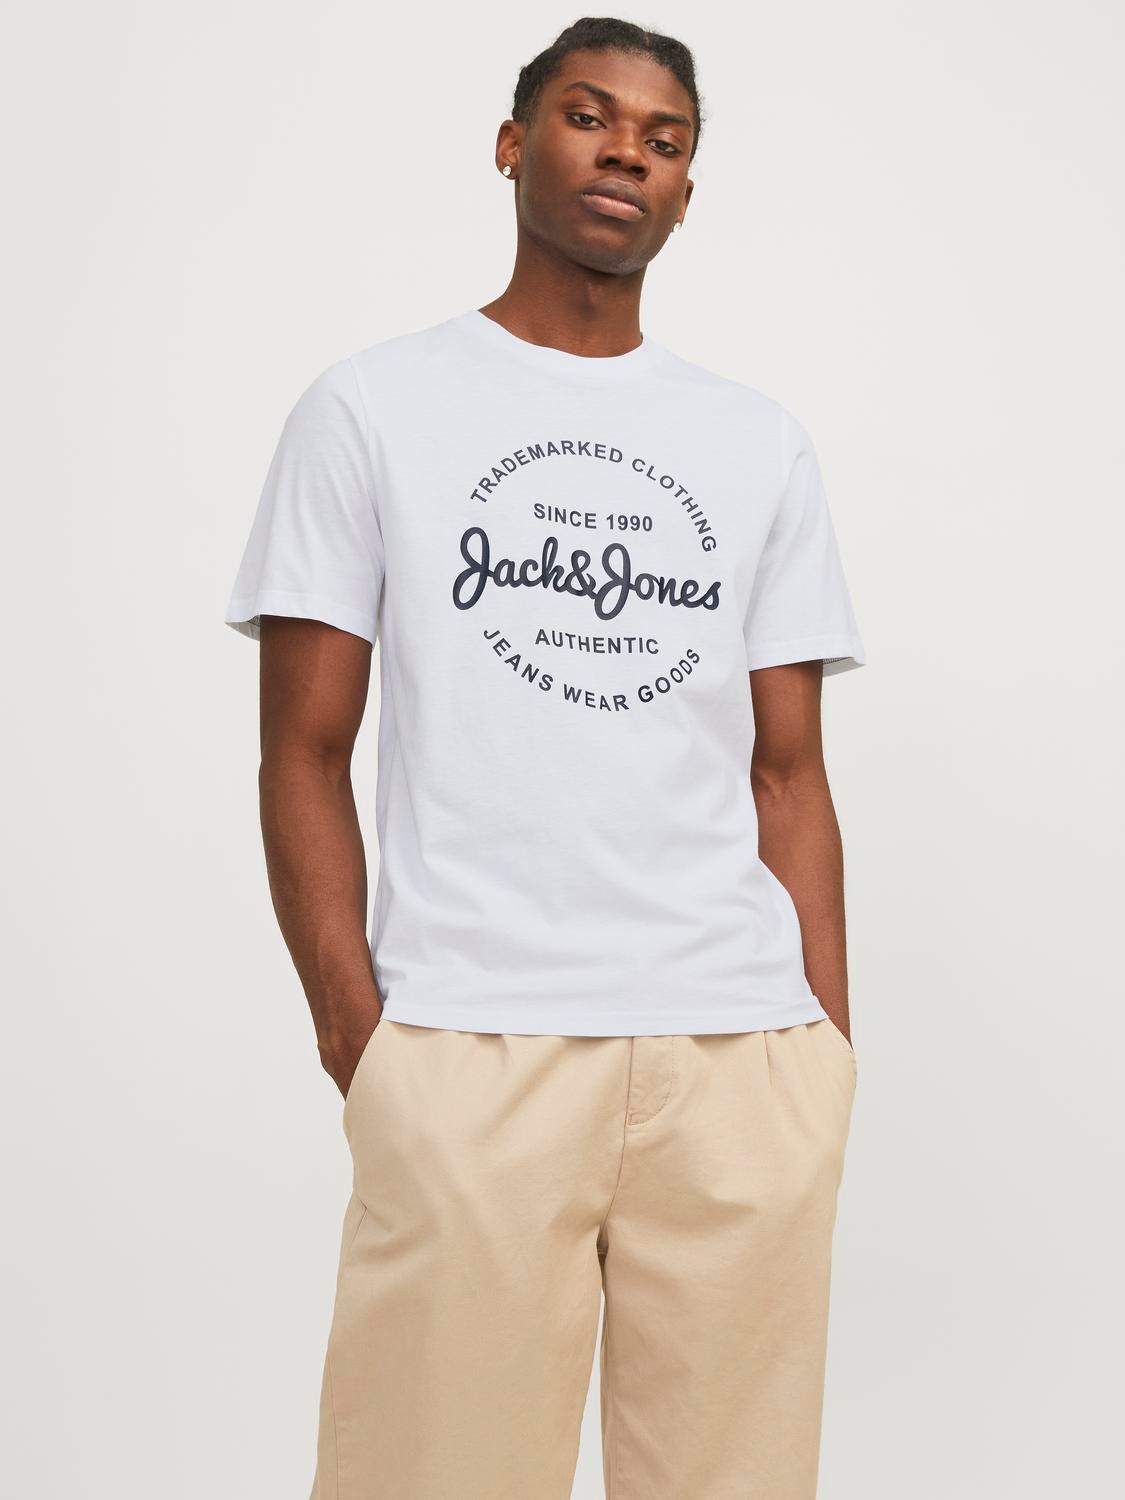 Jack & Jones Paquete de 5 T-shirt Estampar Decote Redondo -Apricot Ice - 12256984